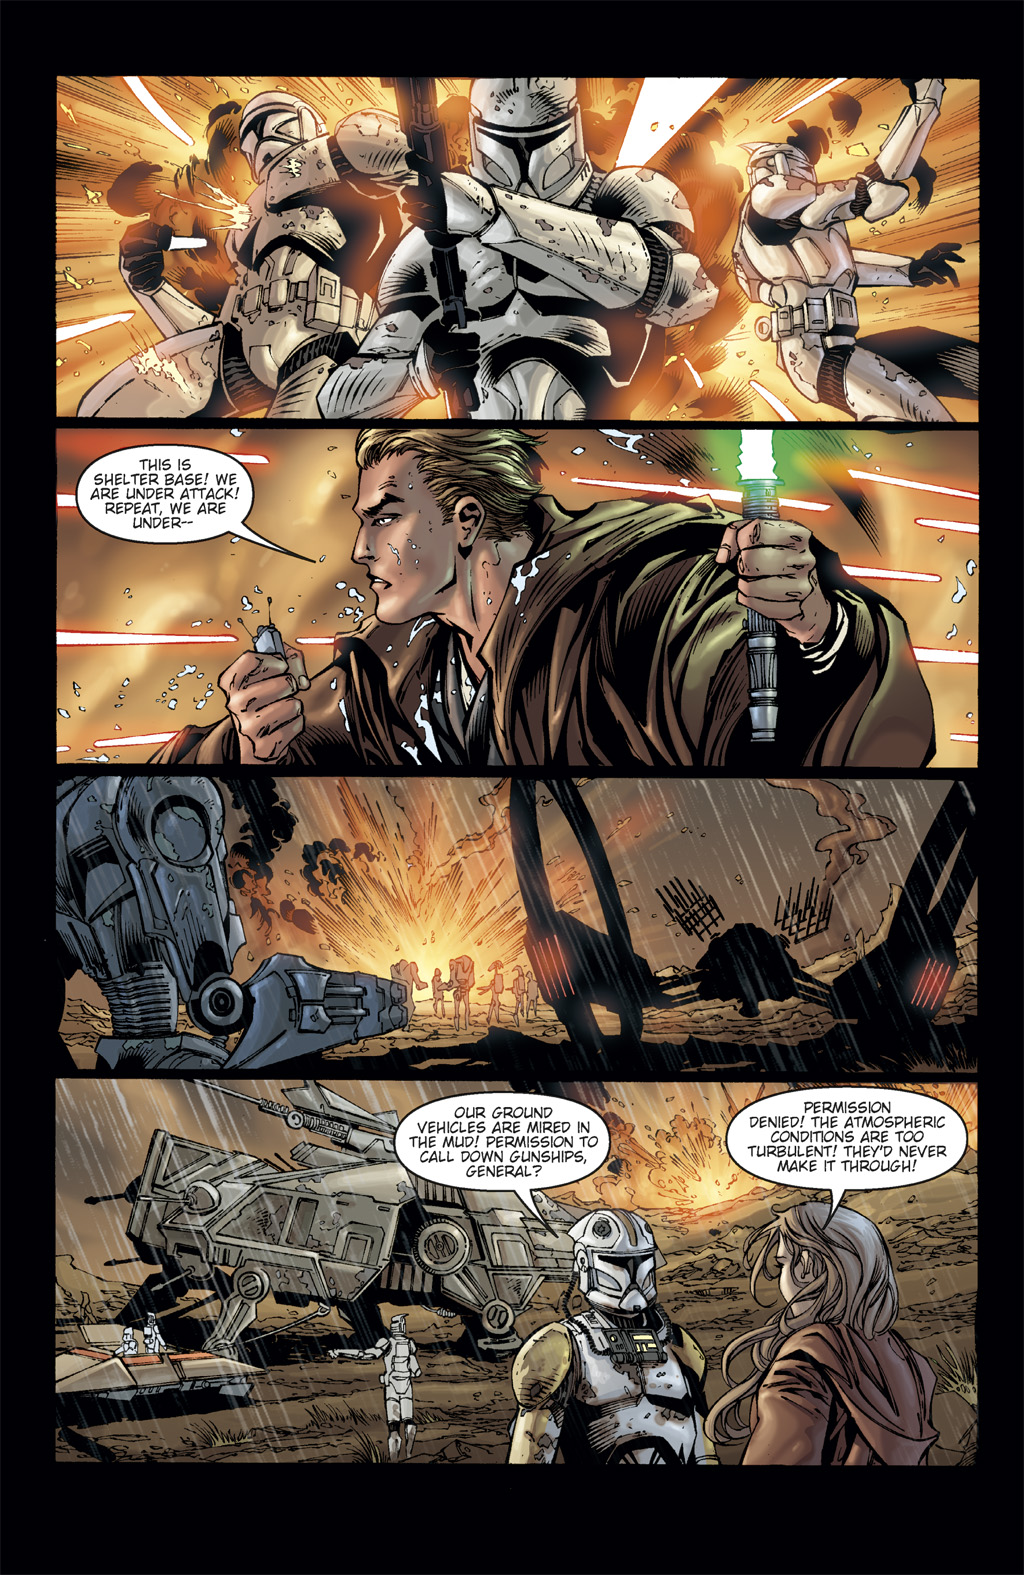 Read online Star Wars: Clone Wars comic -  Issue # TPB 3 - 20